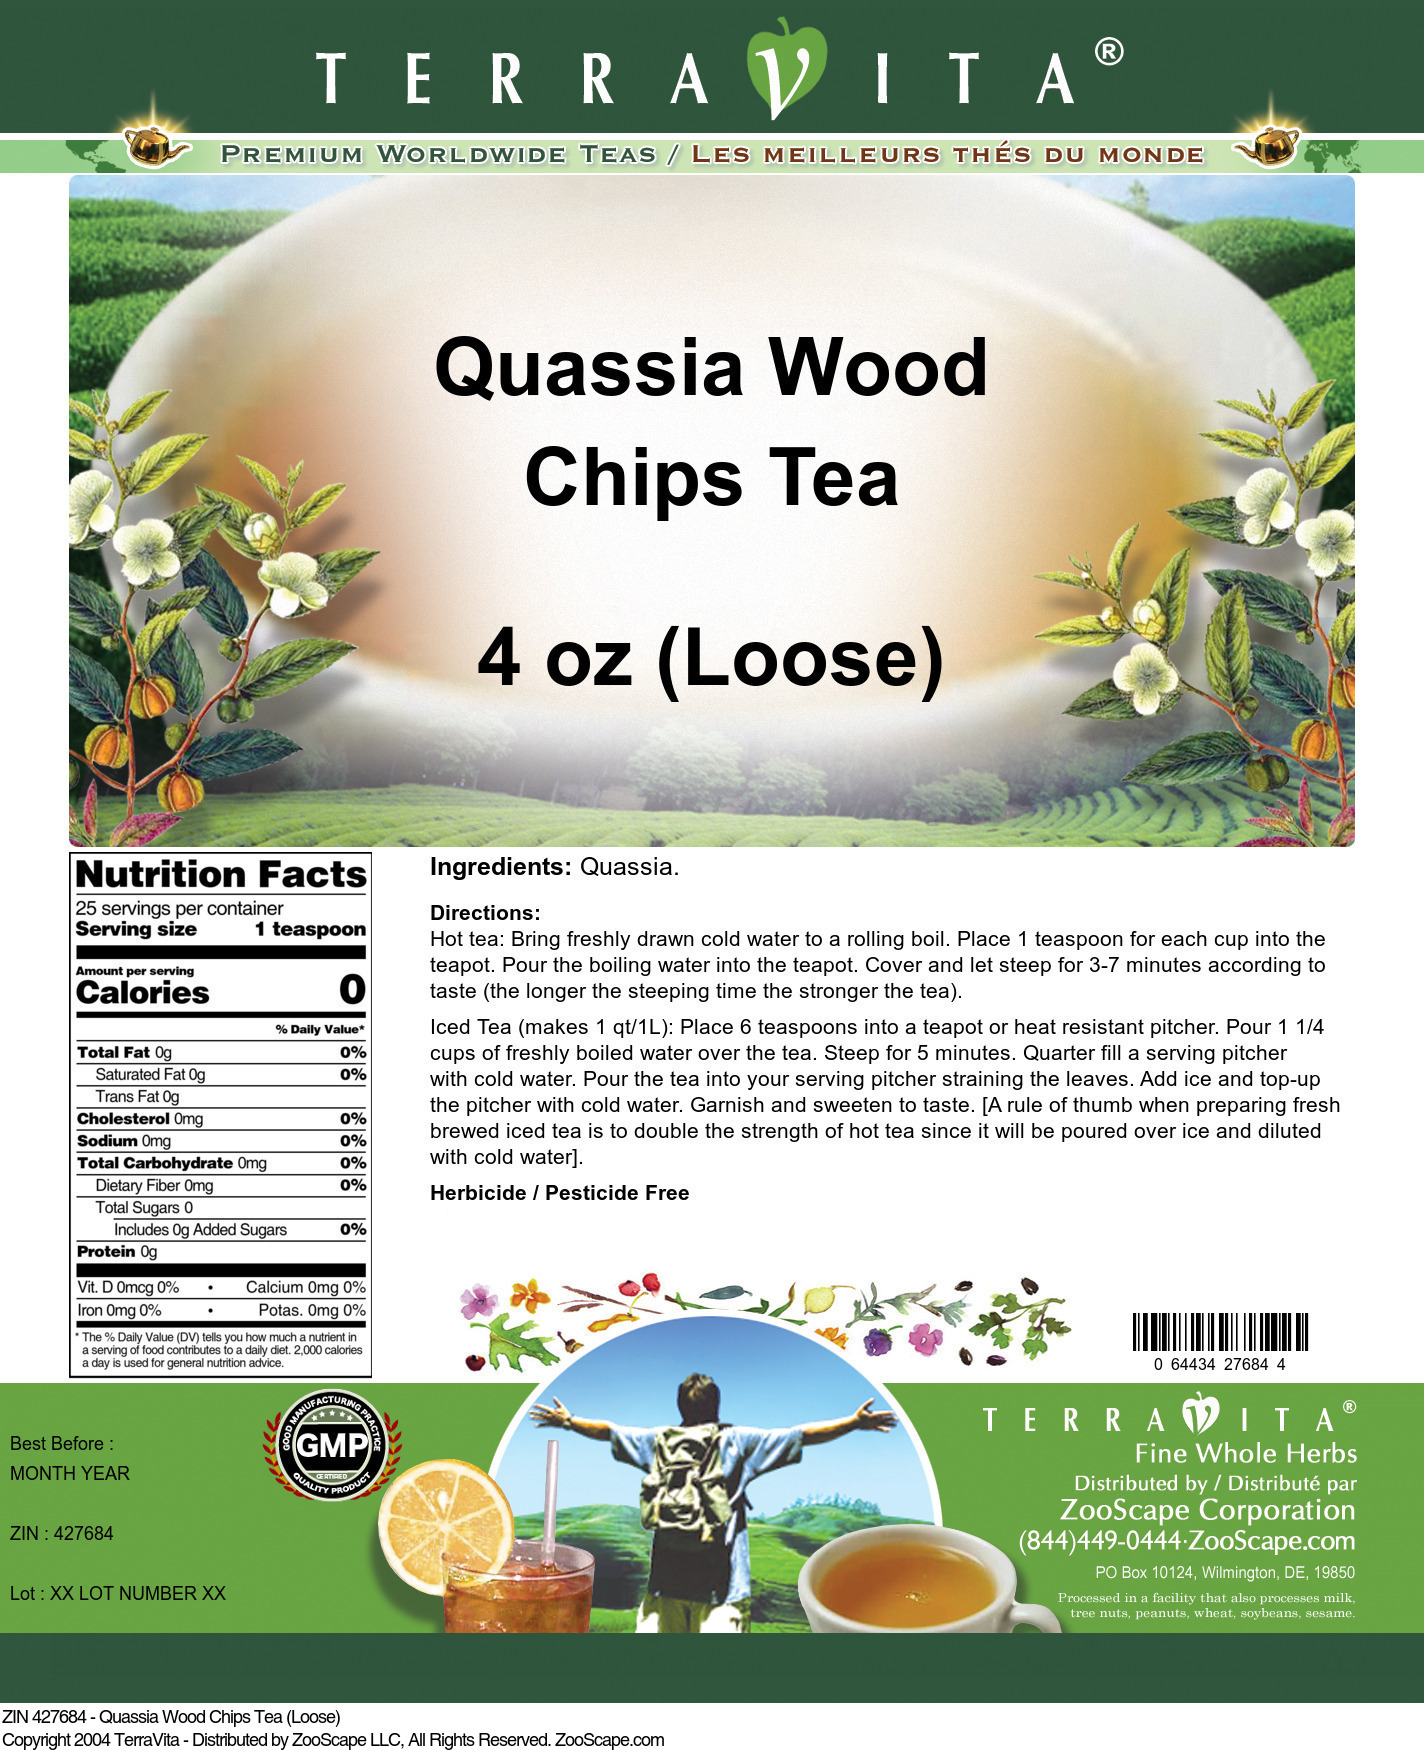 Quassia Wood Chips Tea (Loose) - Label